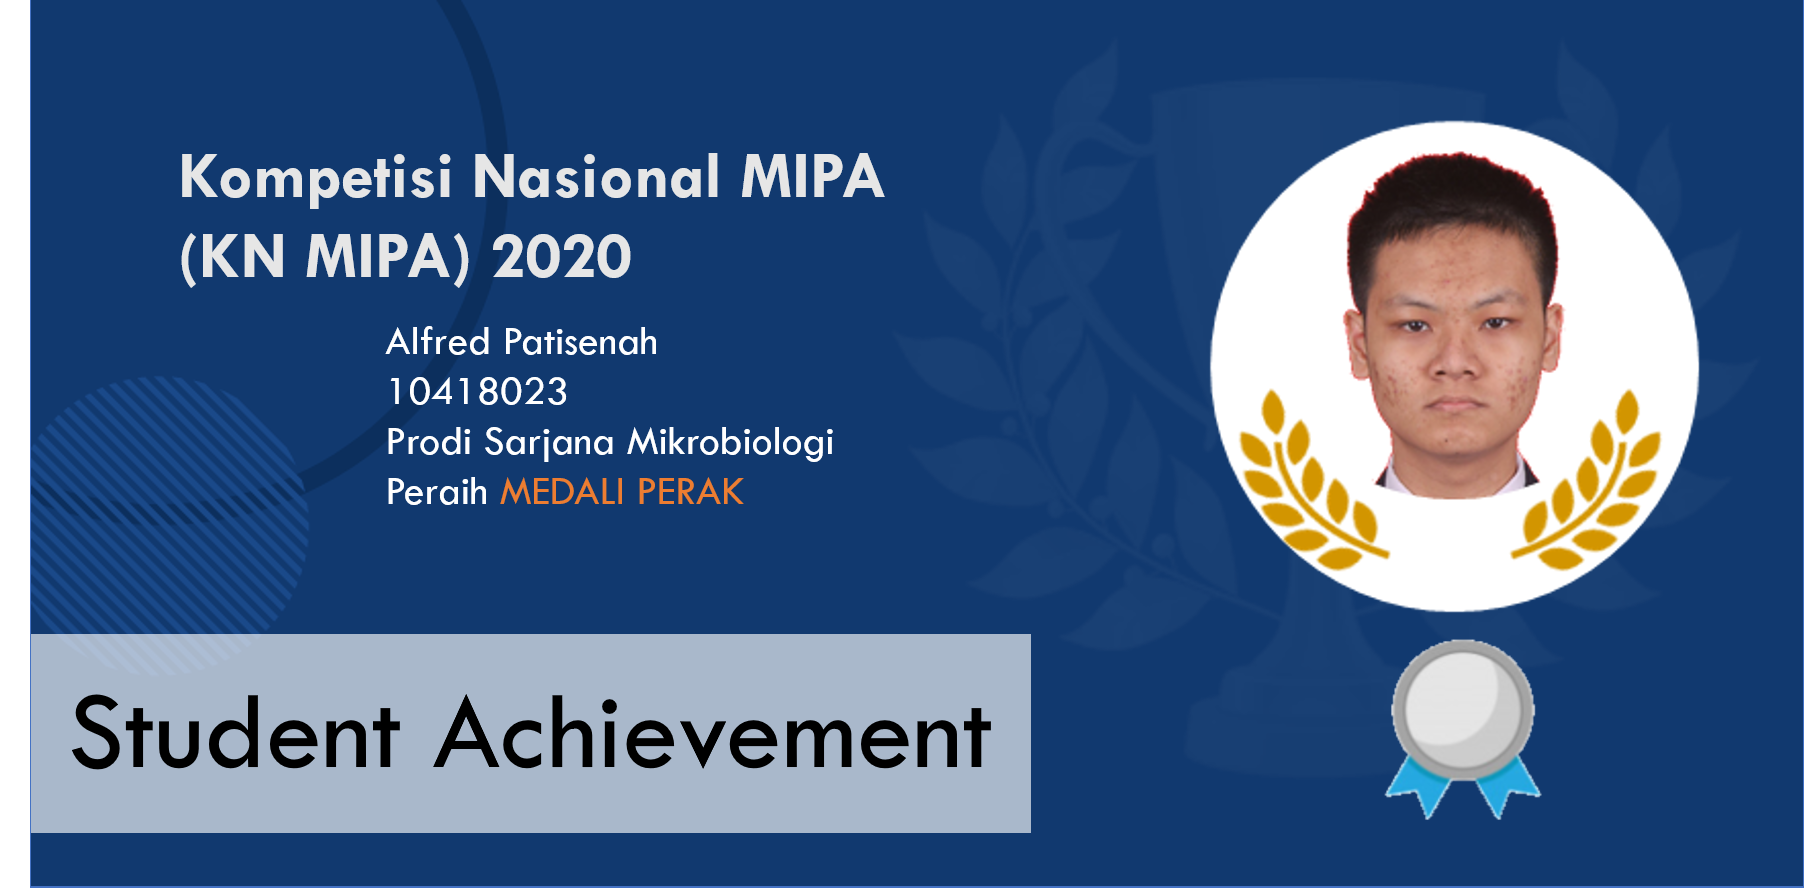 Meraih Medali Perak dalam Kompetisi Nasional Matematika dan Ilmu Pengetahuan Alam (KN MIPA) 2020